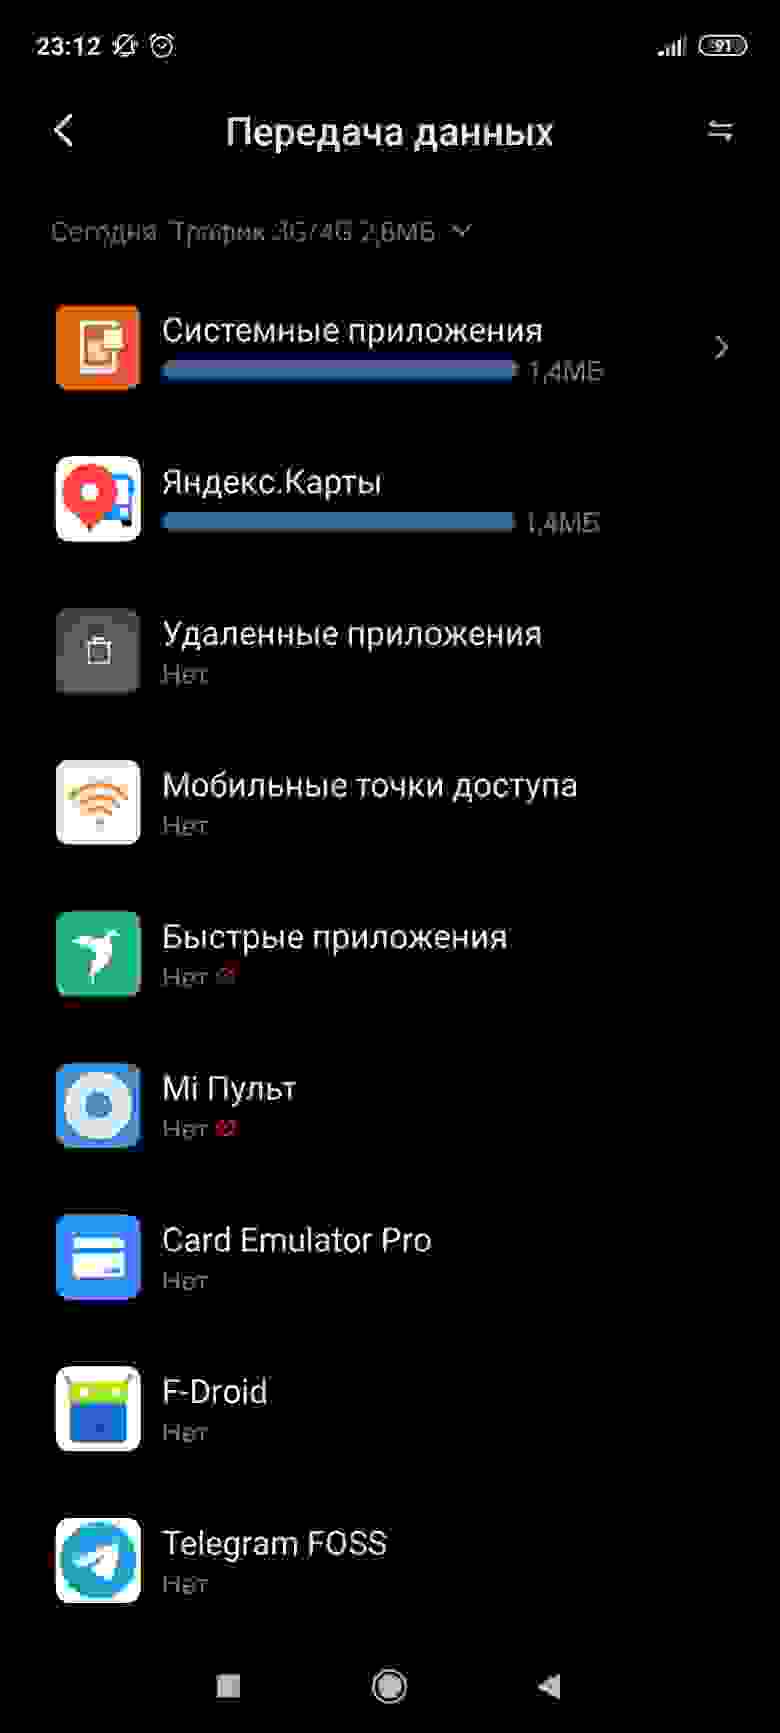 Скриншот потребления сети Андроид, где системные приложения и яндекс карты скушали по 1.4мб трафика